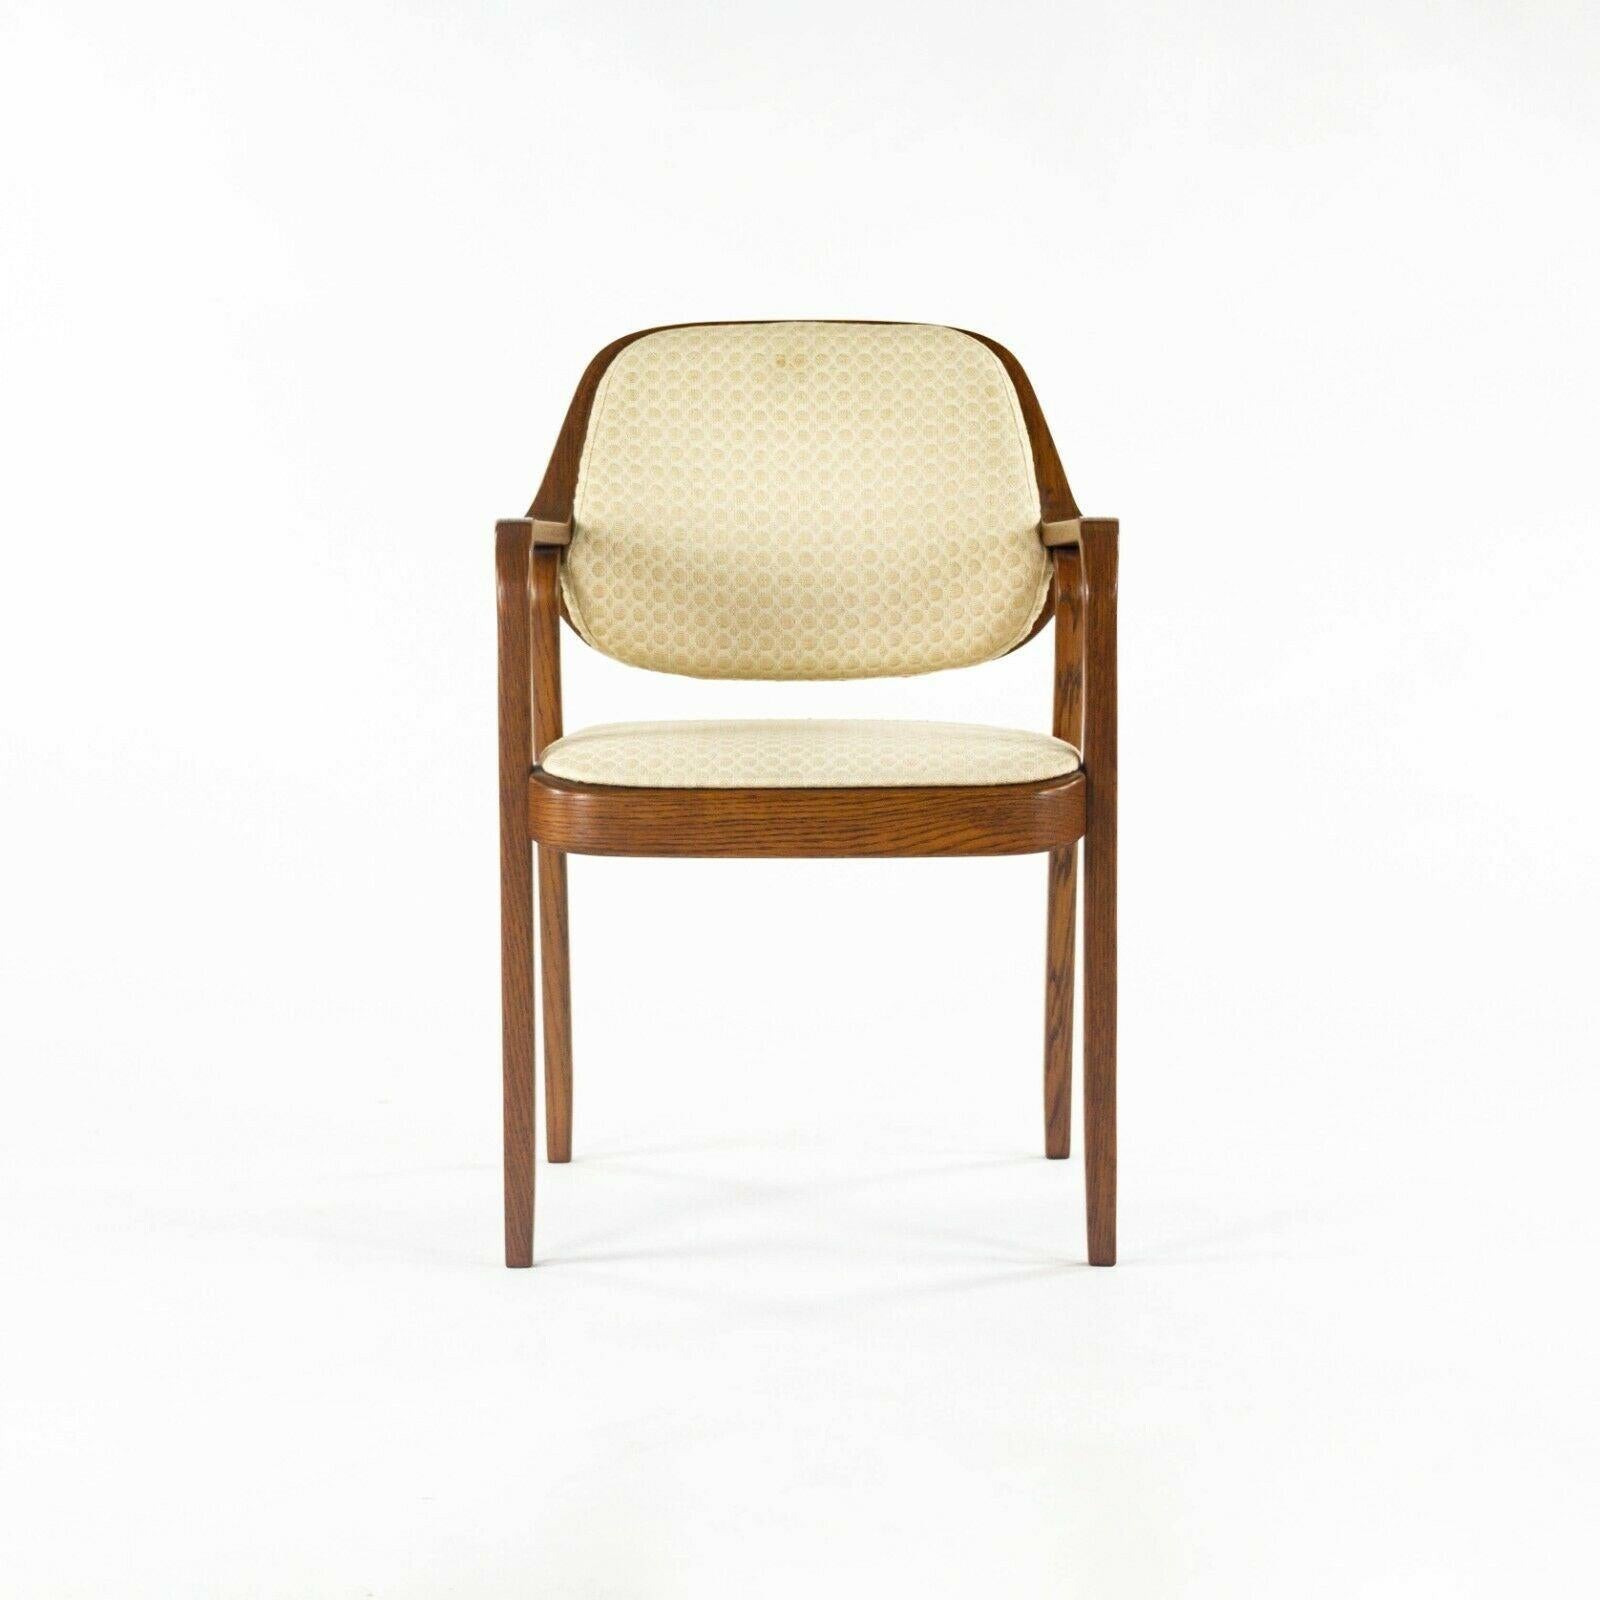 Zum Verkauf steht ein Paar der ikonischen Stühle Nr. 1105, entworfen von Don Petitt für Knoll. Dieses bemerkenswerte Paar stammt aus dem Haus eines Knoll-Mitarbeiters, der über 50 Jahre lang für das Unternehmen tätig war. Die Stühle wurden beide in